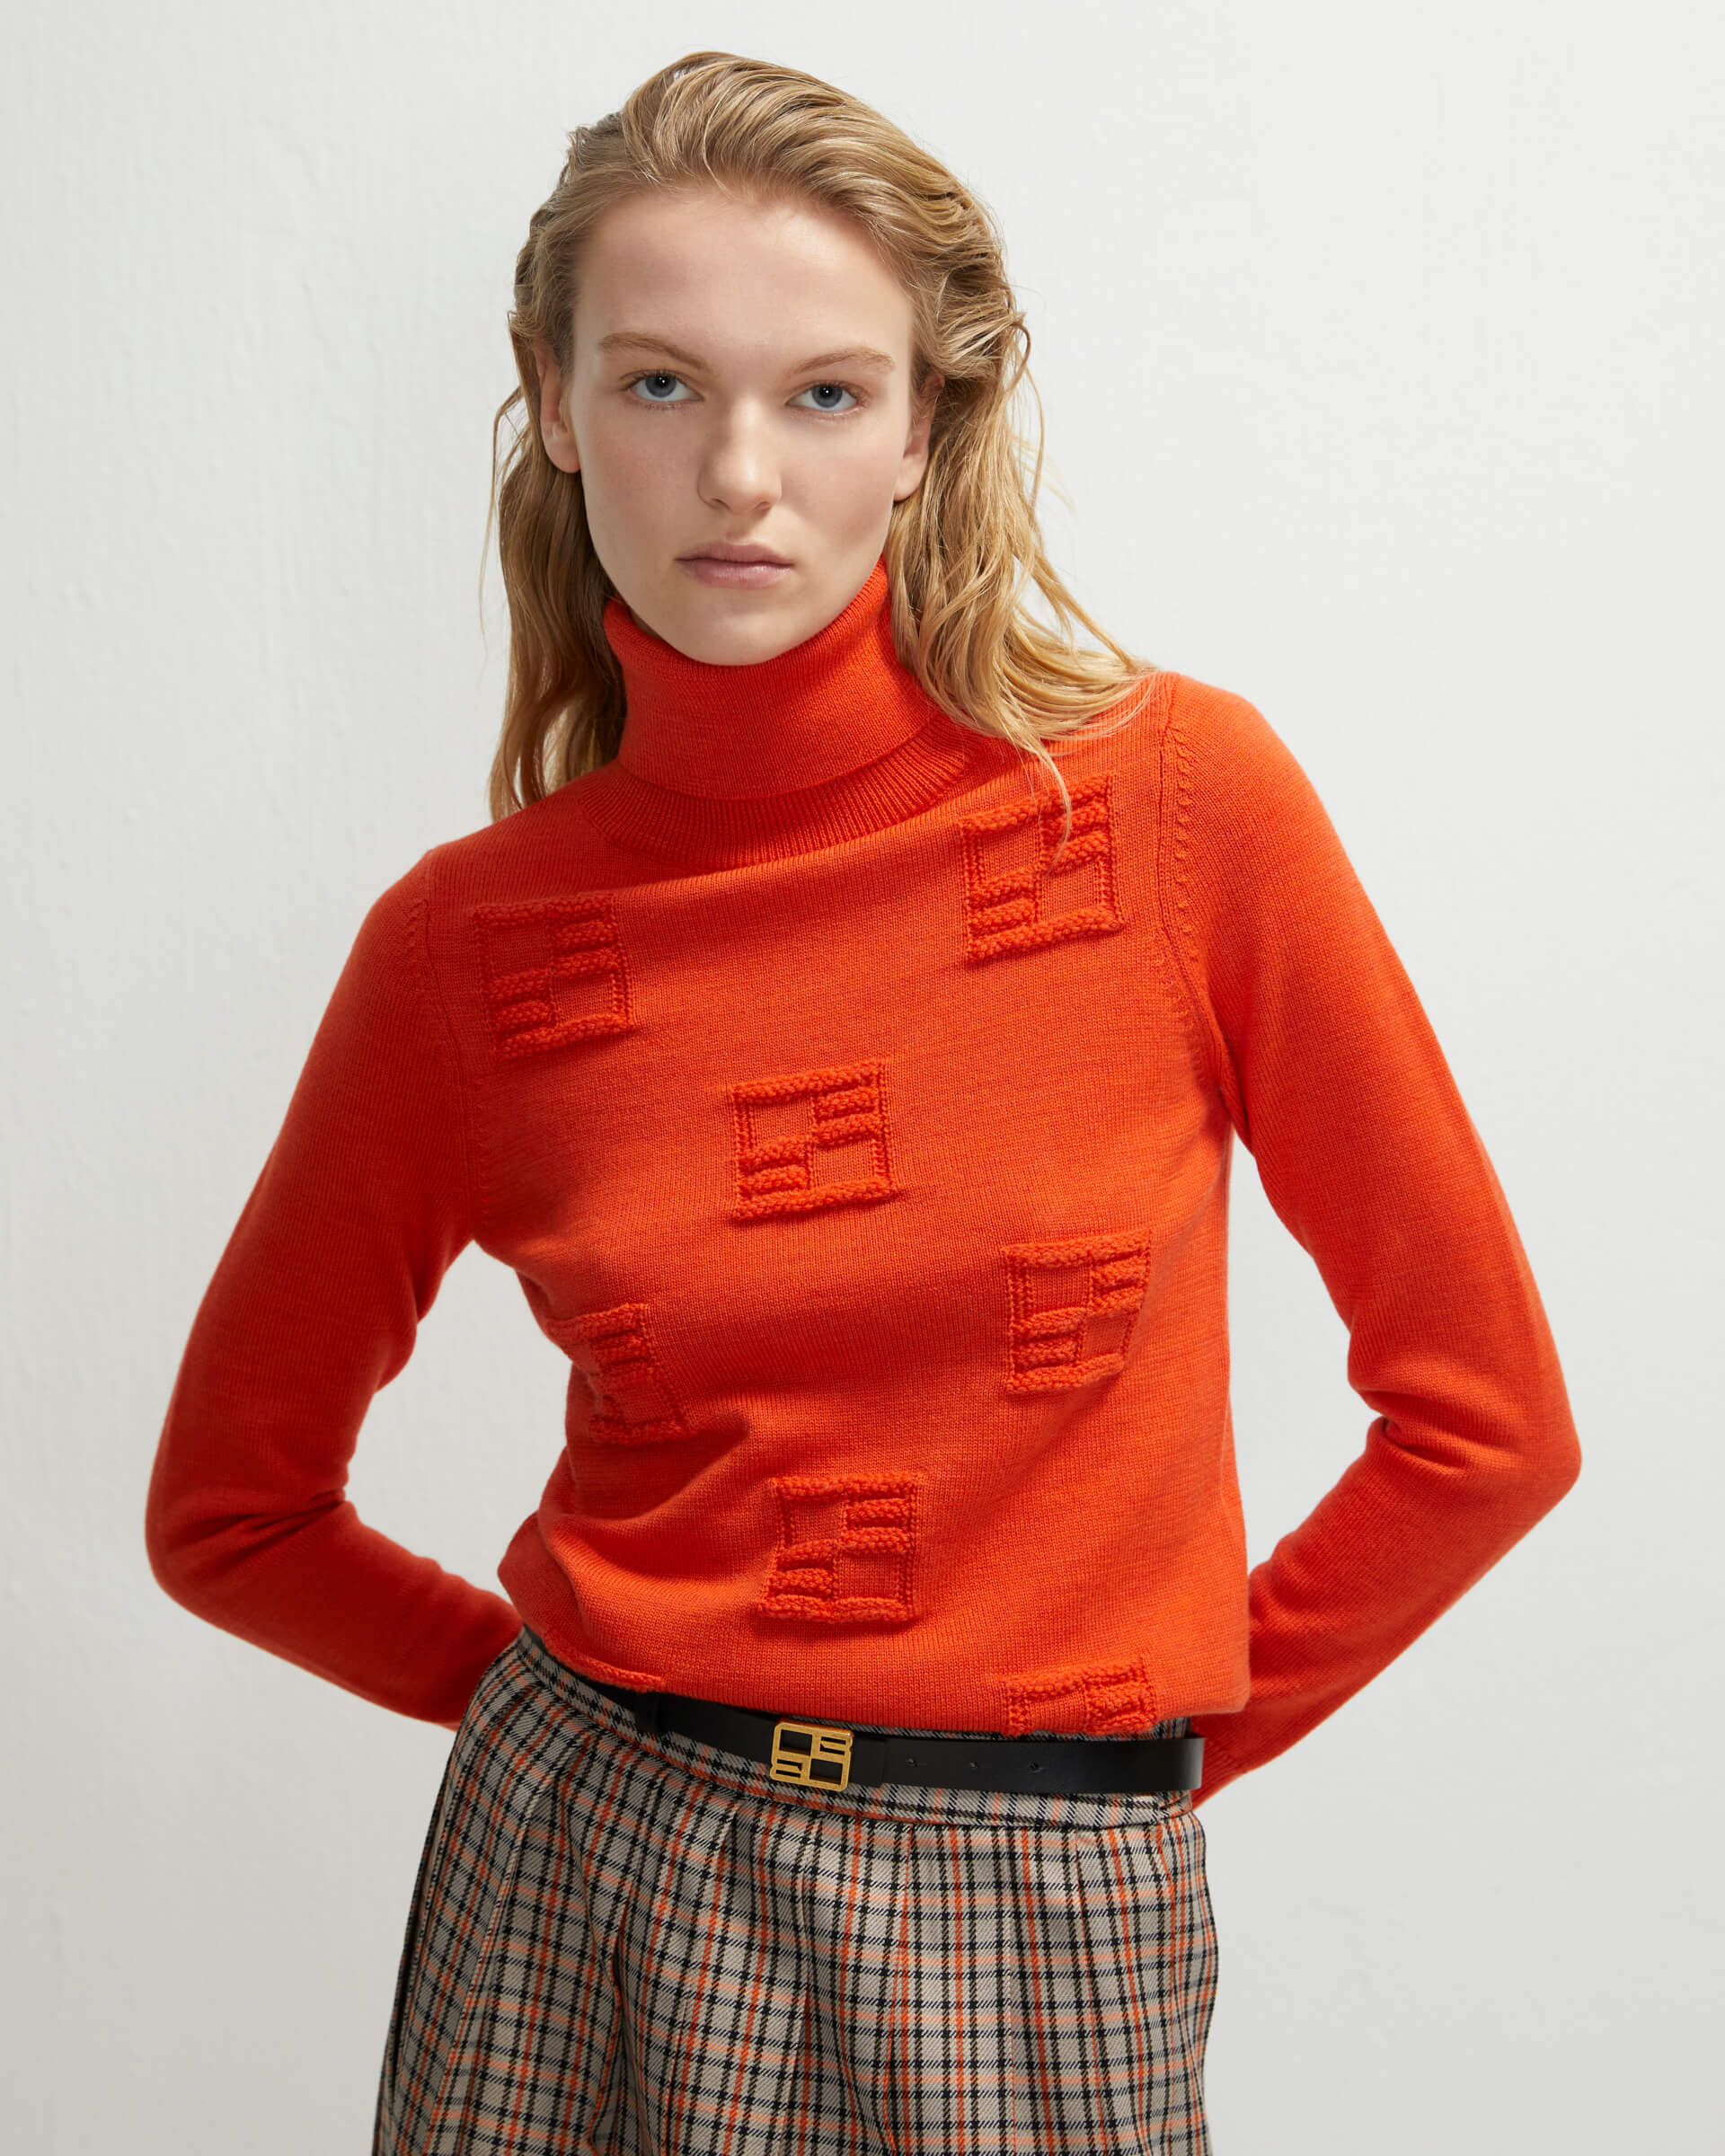 BeatriceB Monogram Orange Sweater